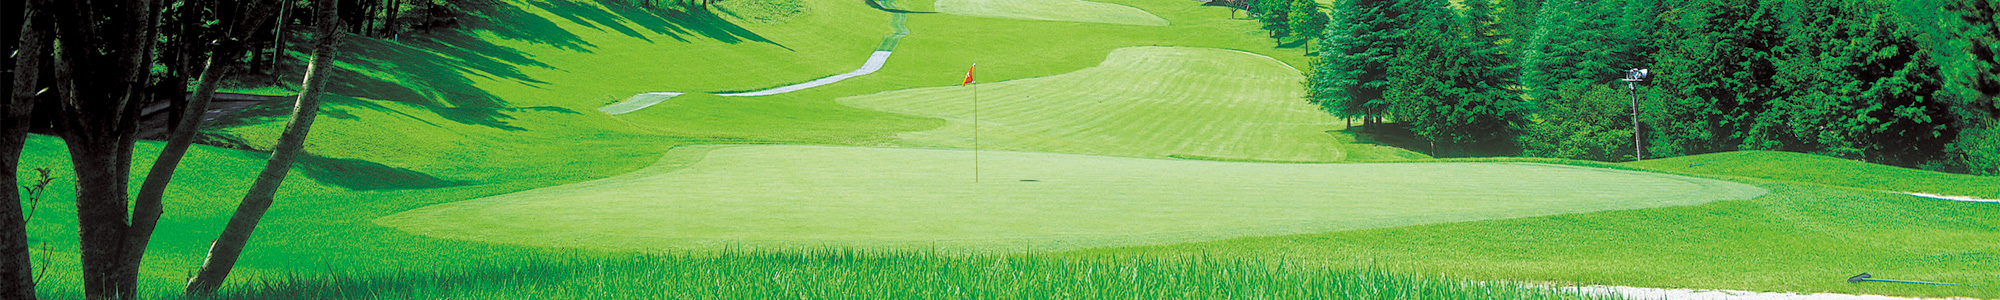 オリムピックナショナルゴルフクラブ サカワコース サイトマップ